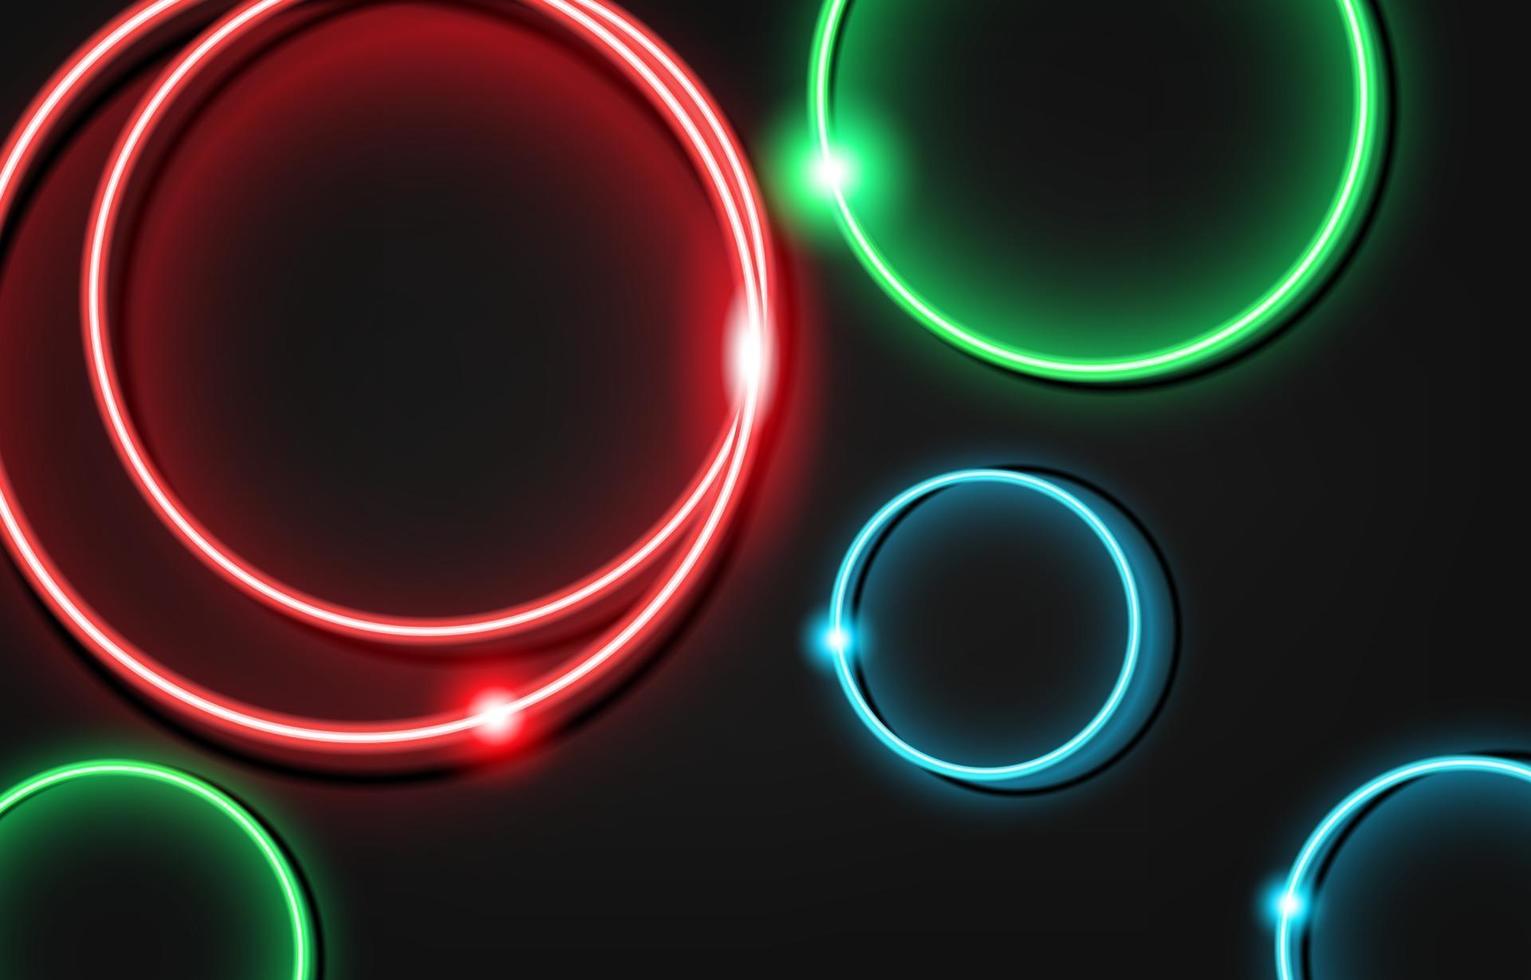 Neon Kreis Luxus Hintergrund mit Metall Textur 3d abstrakt. Geeignet für Tapeten, Banner, Hintergrund, Karte, Buchillustration, Landing Page, Geschenk, Cover, Flyer, Bericht, Geschäft, Social Media vektor